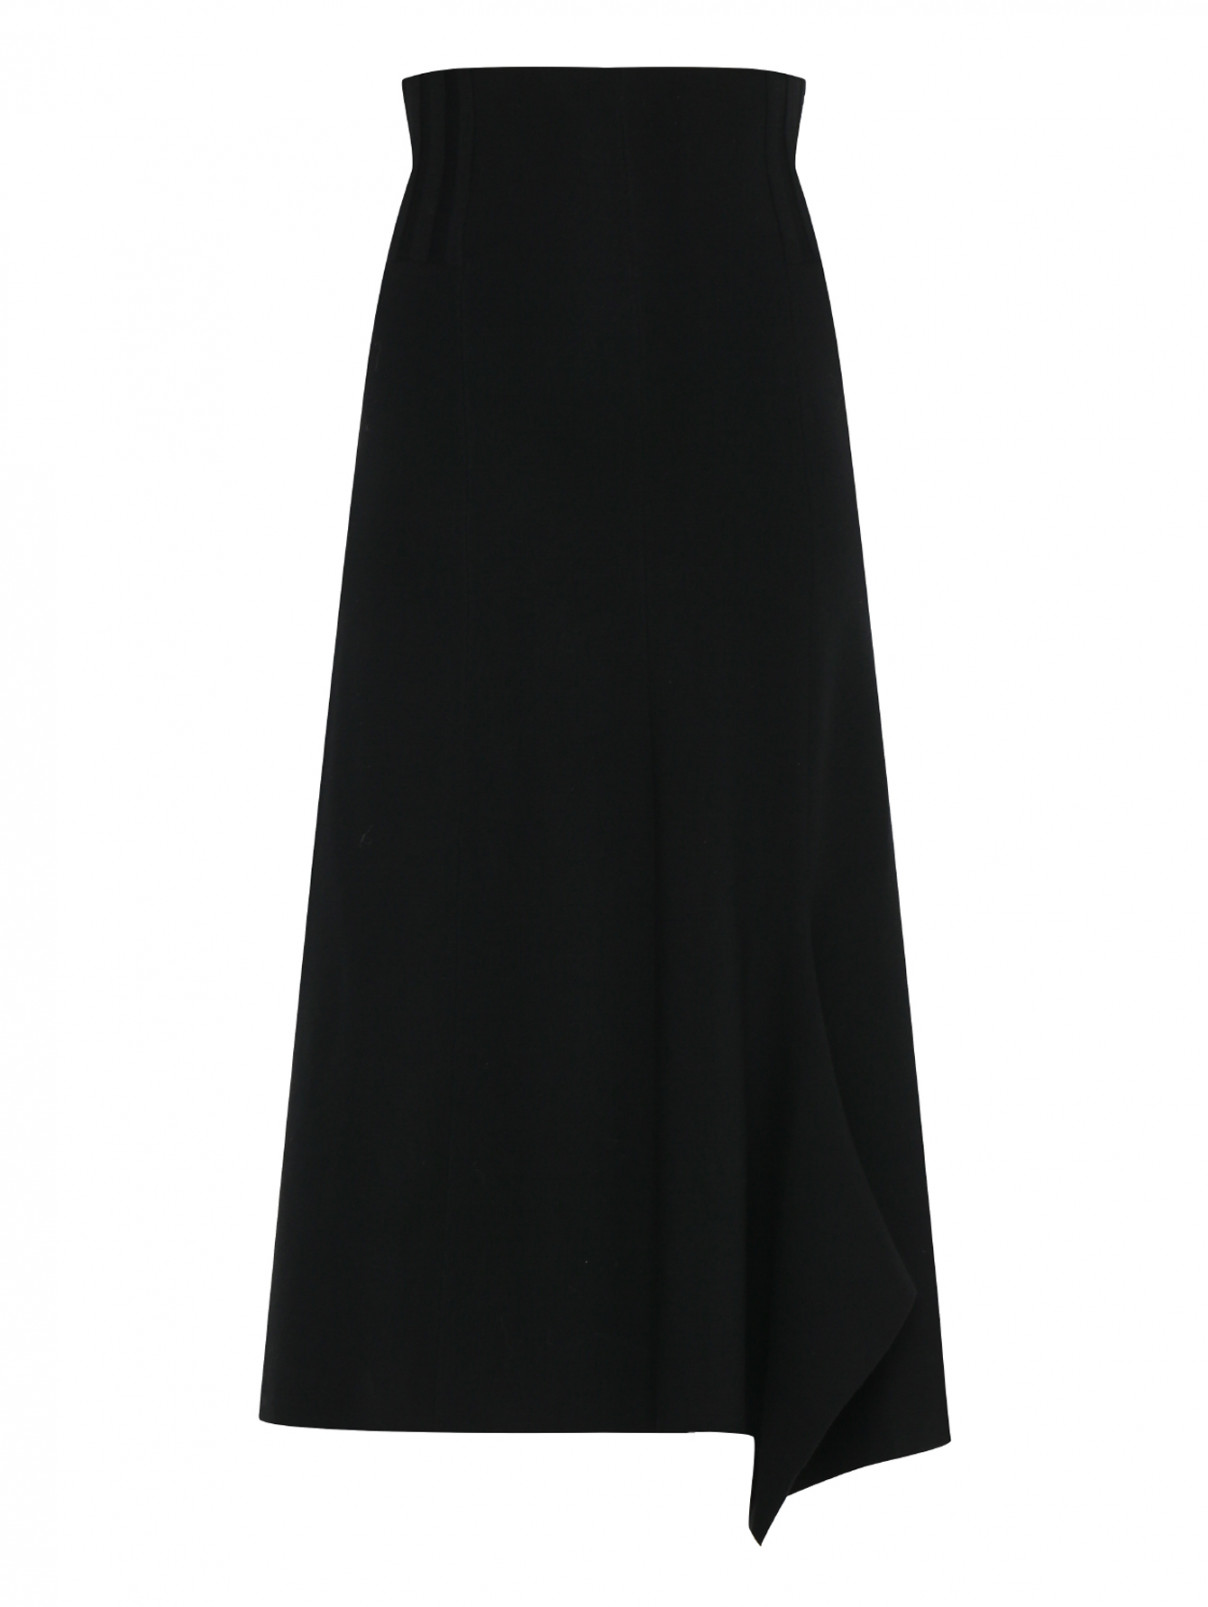 Трикотажная юбка из шерсти Dorothee Schumacher  –  Общий вид  – Цвет:  Черный